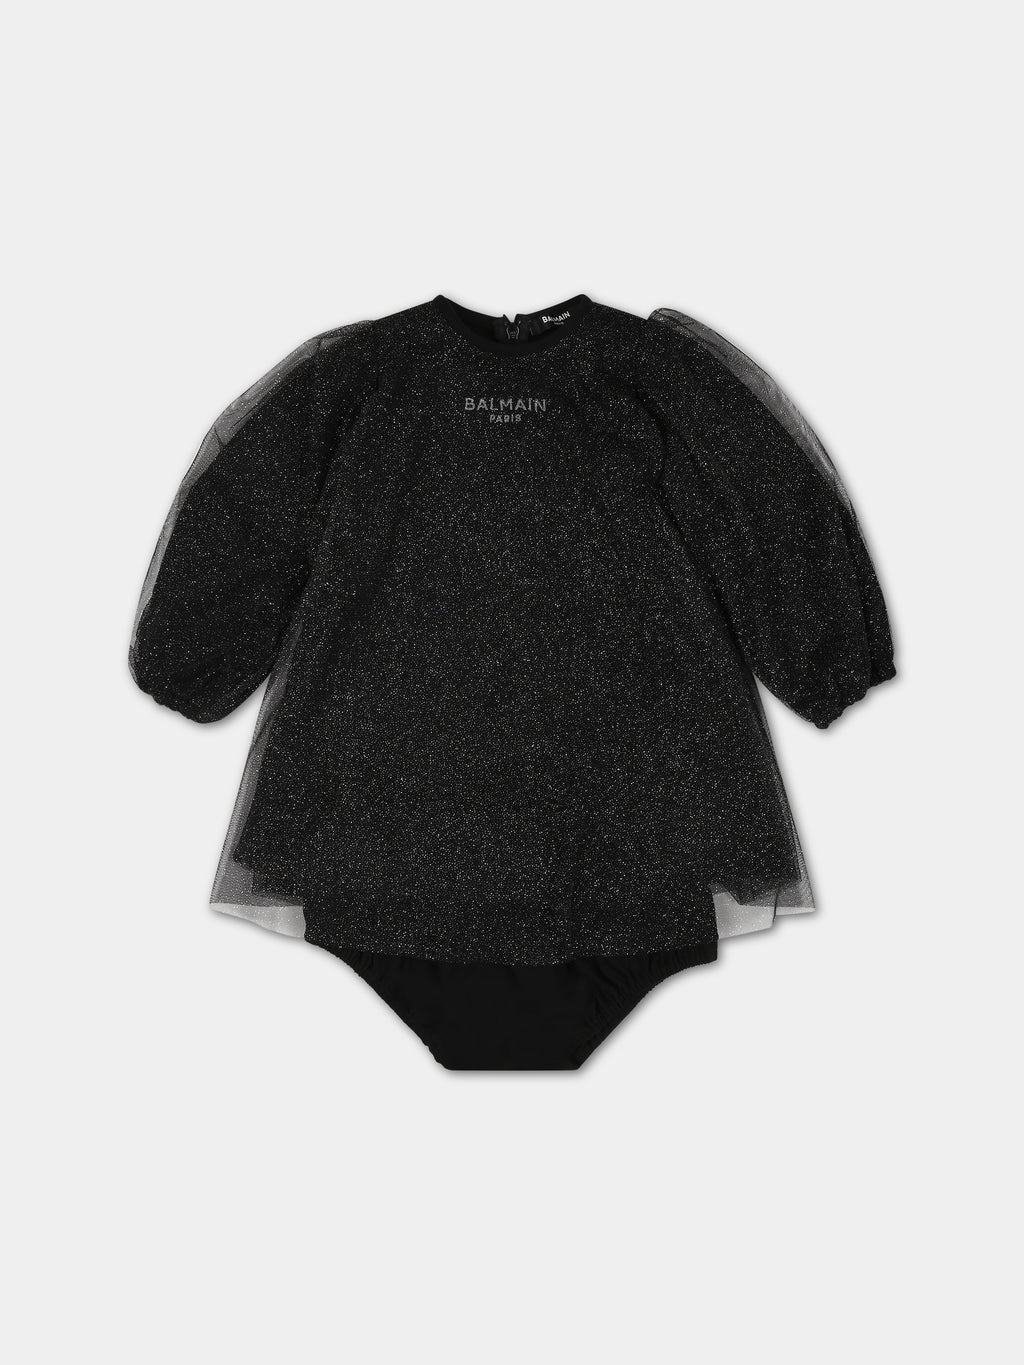 Vestito nero per neonata con logo